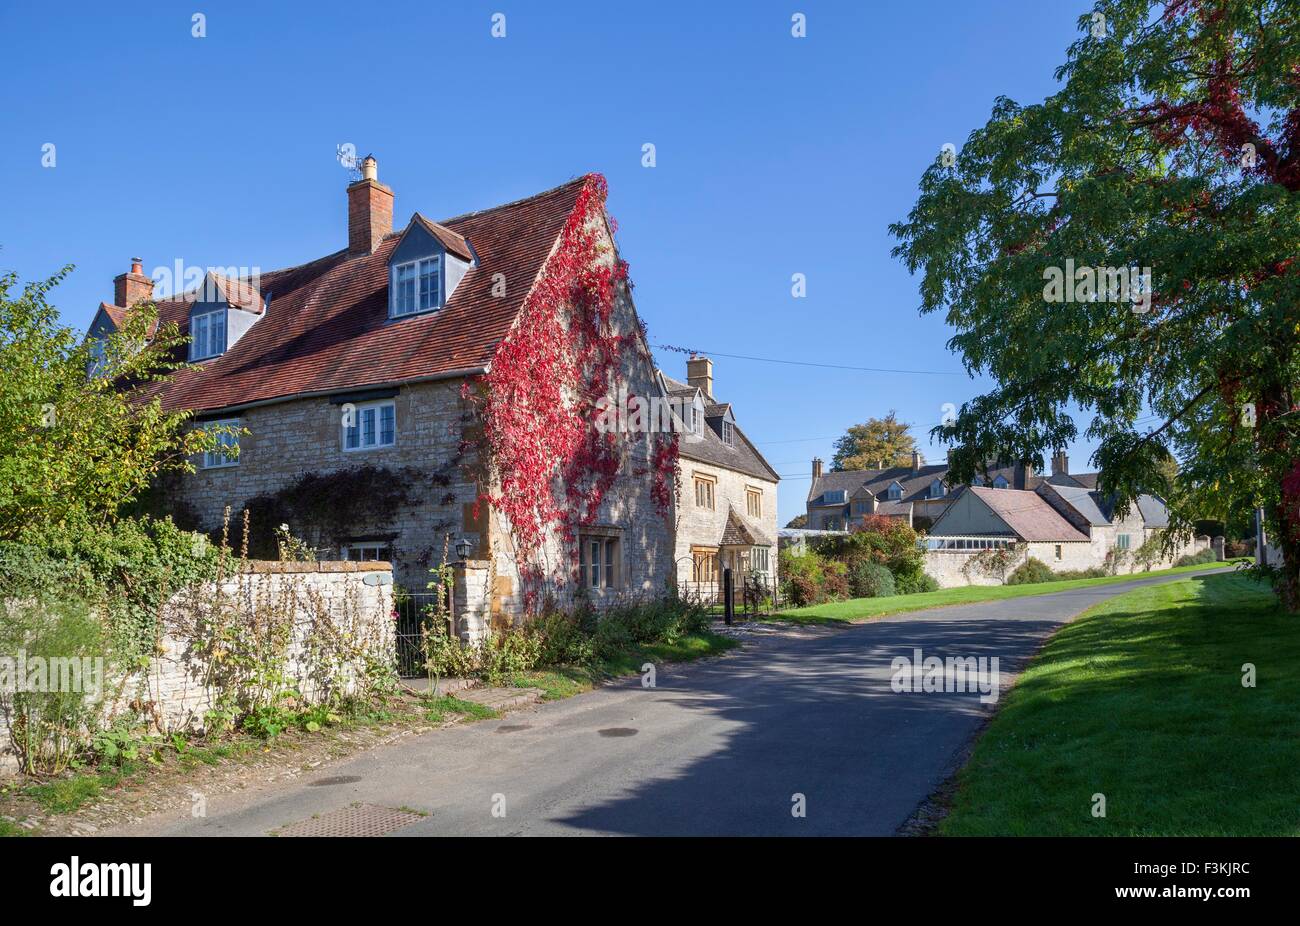 Halford village in Warwickshire, England. Stock Photo